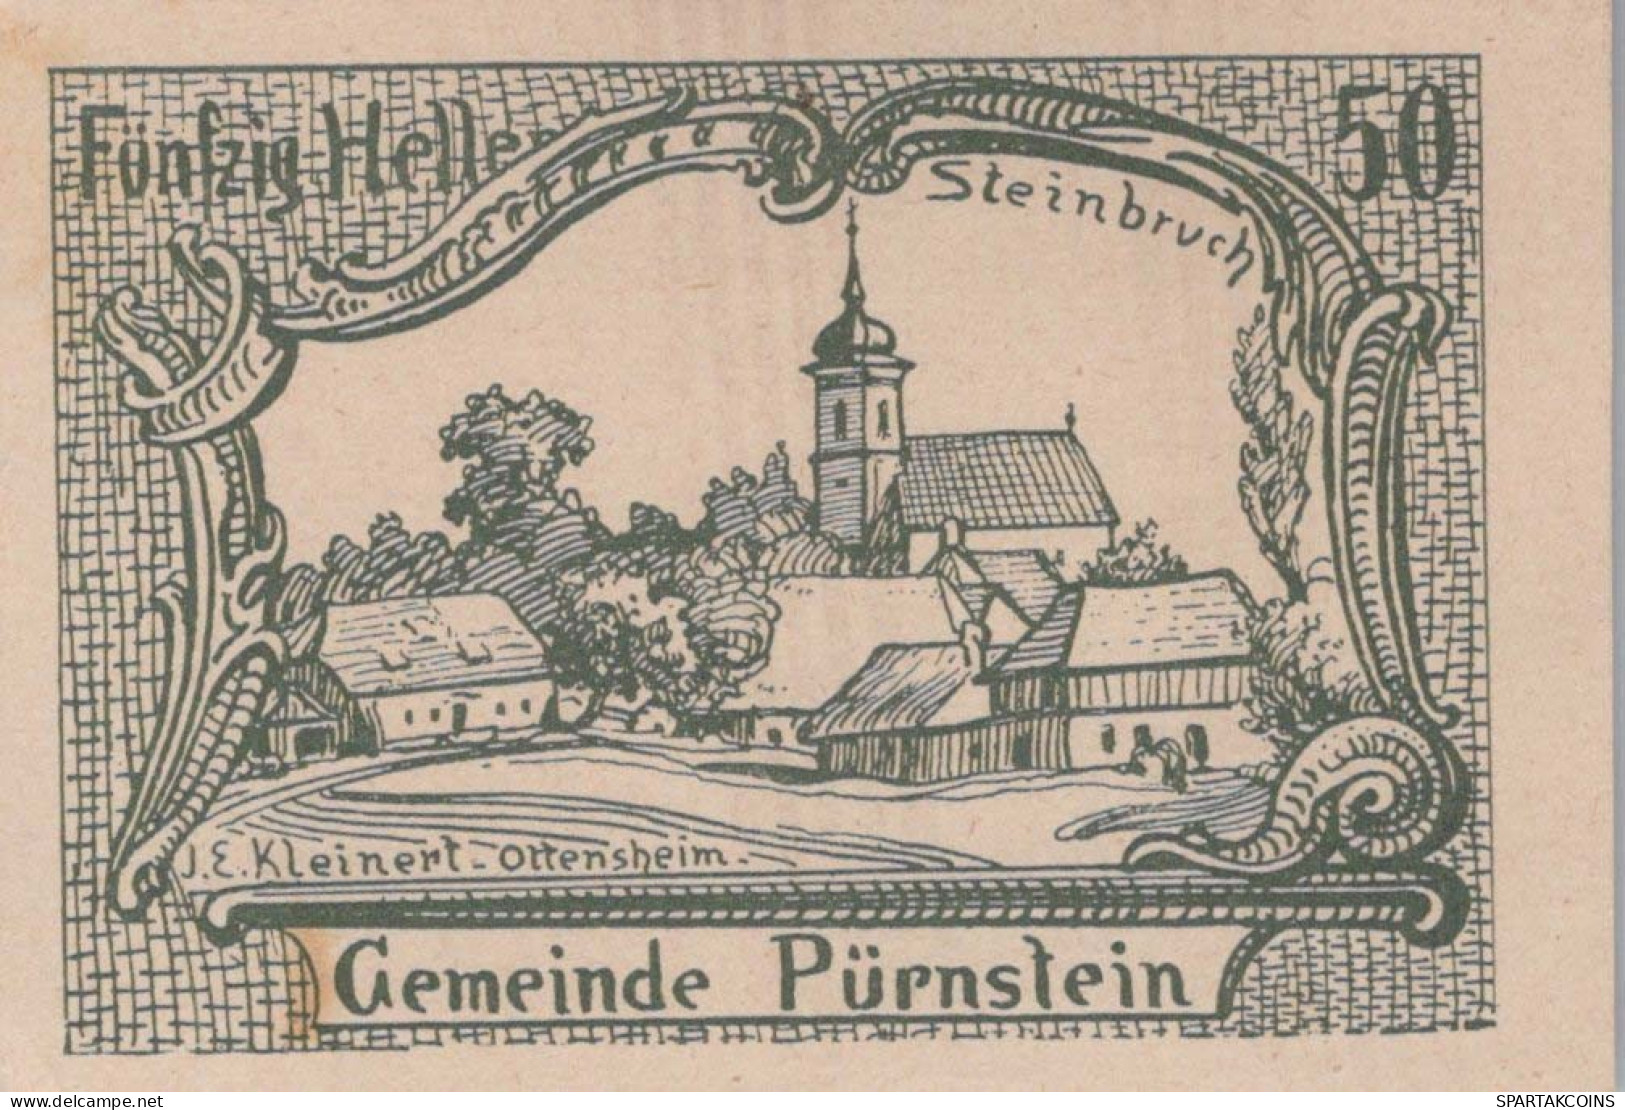 50 HELLER 1920 Stadt PÜRNSTEIN Niedrigeren Österreich Notgeld Banknote #PE519 - [11] Emissions Locales